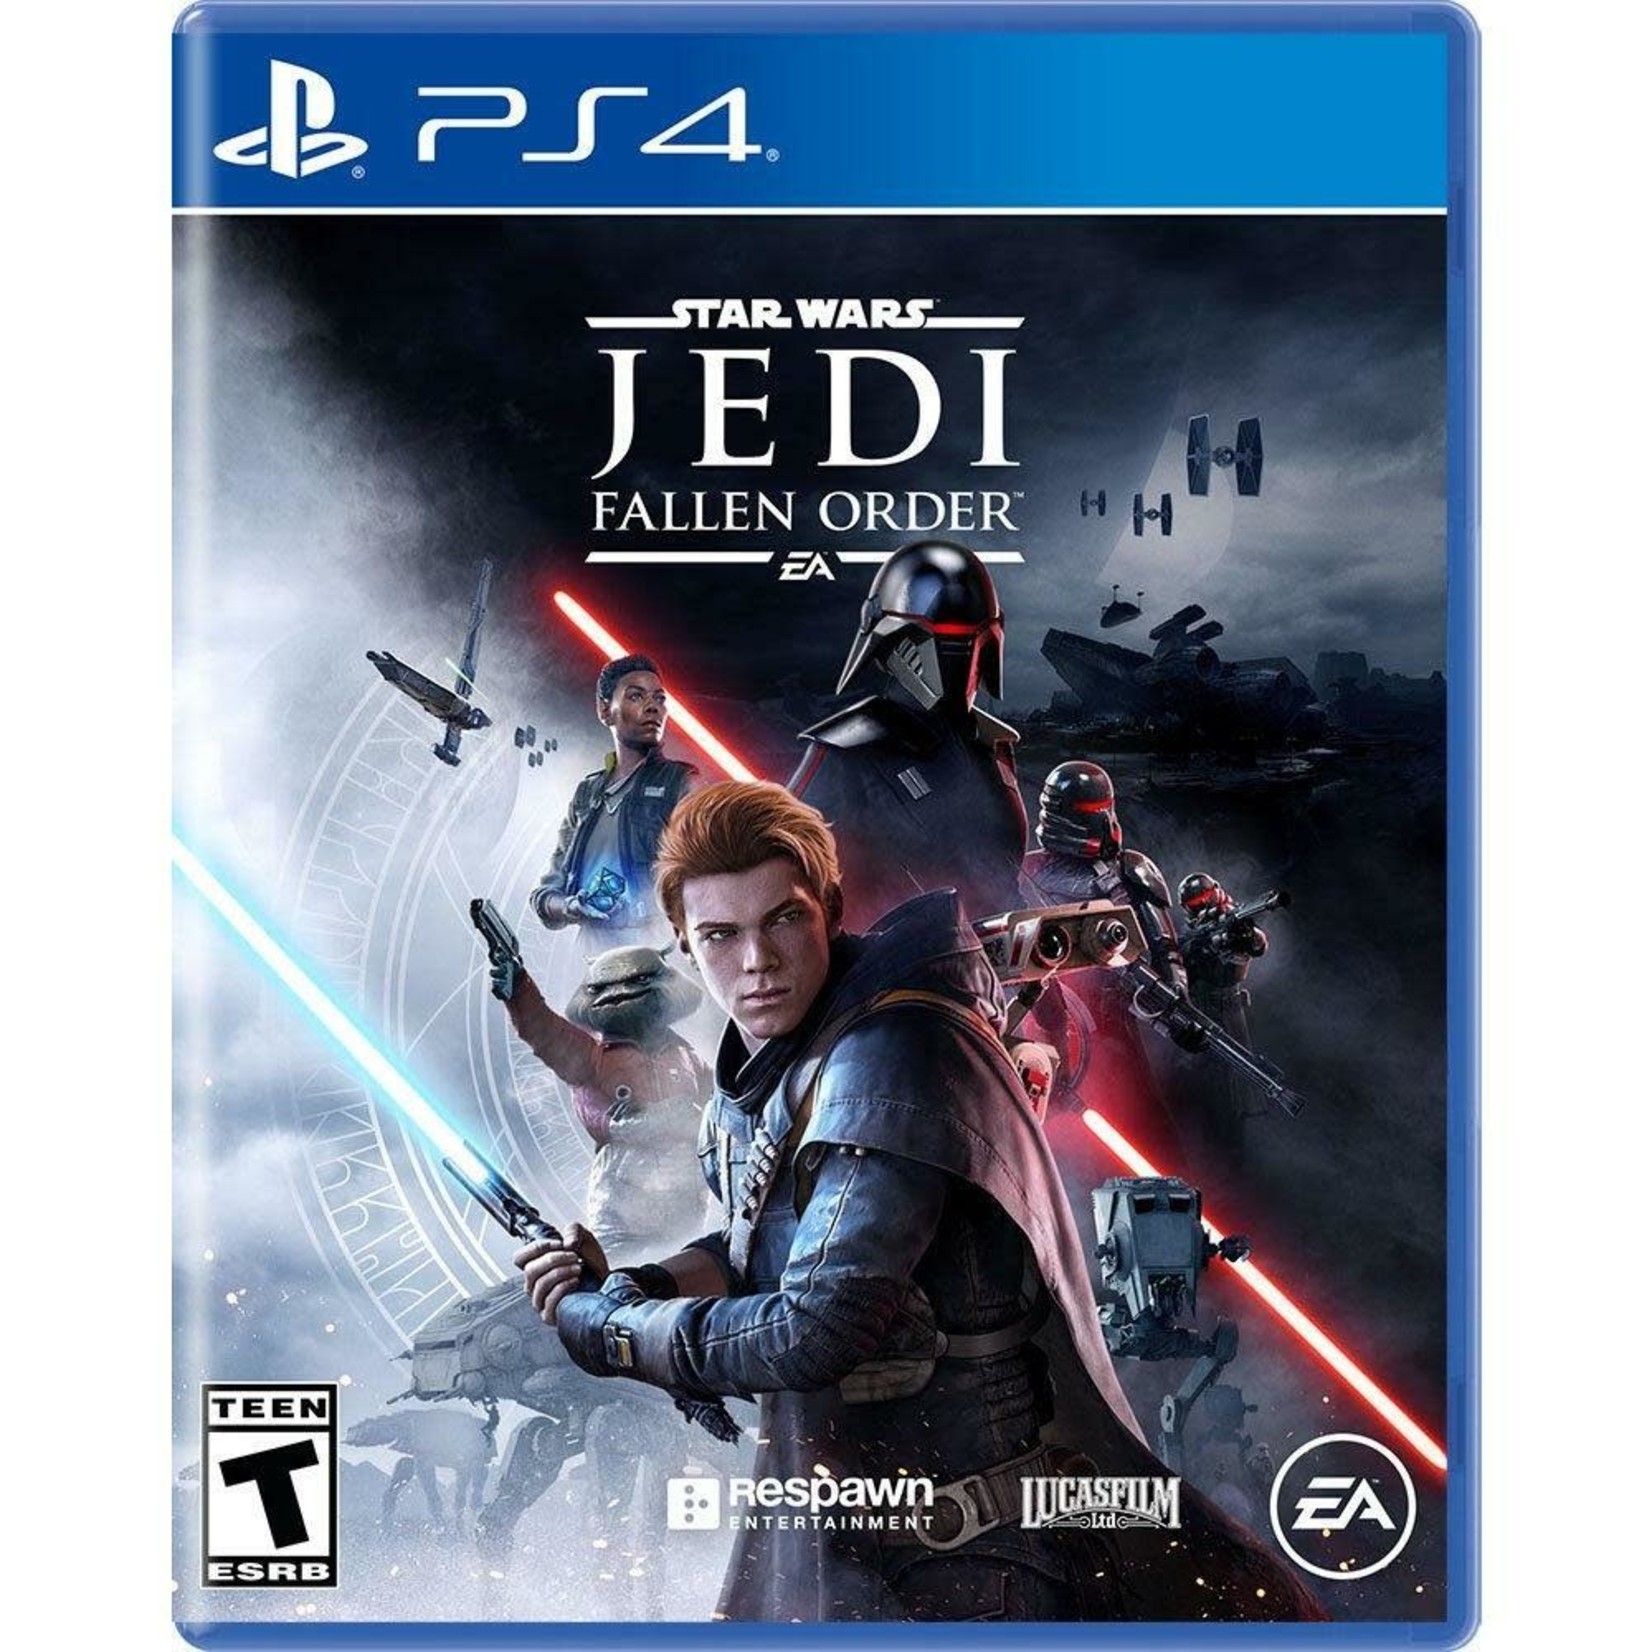 PS4U-Star Wars Jedi: Fallen Order